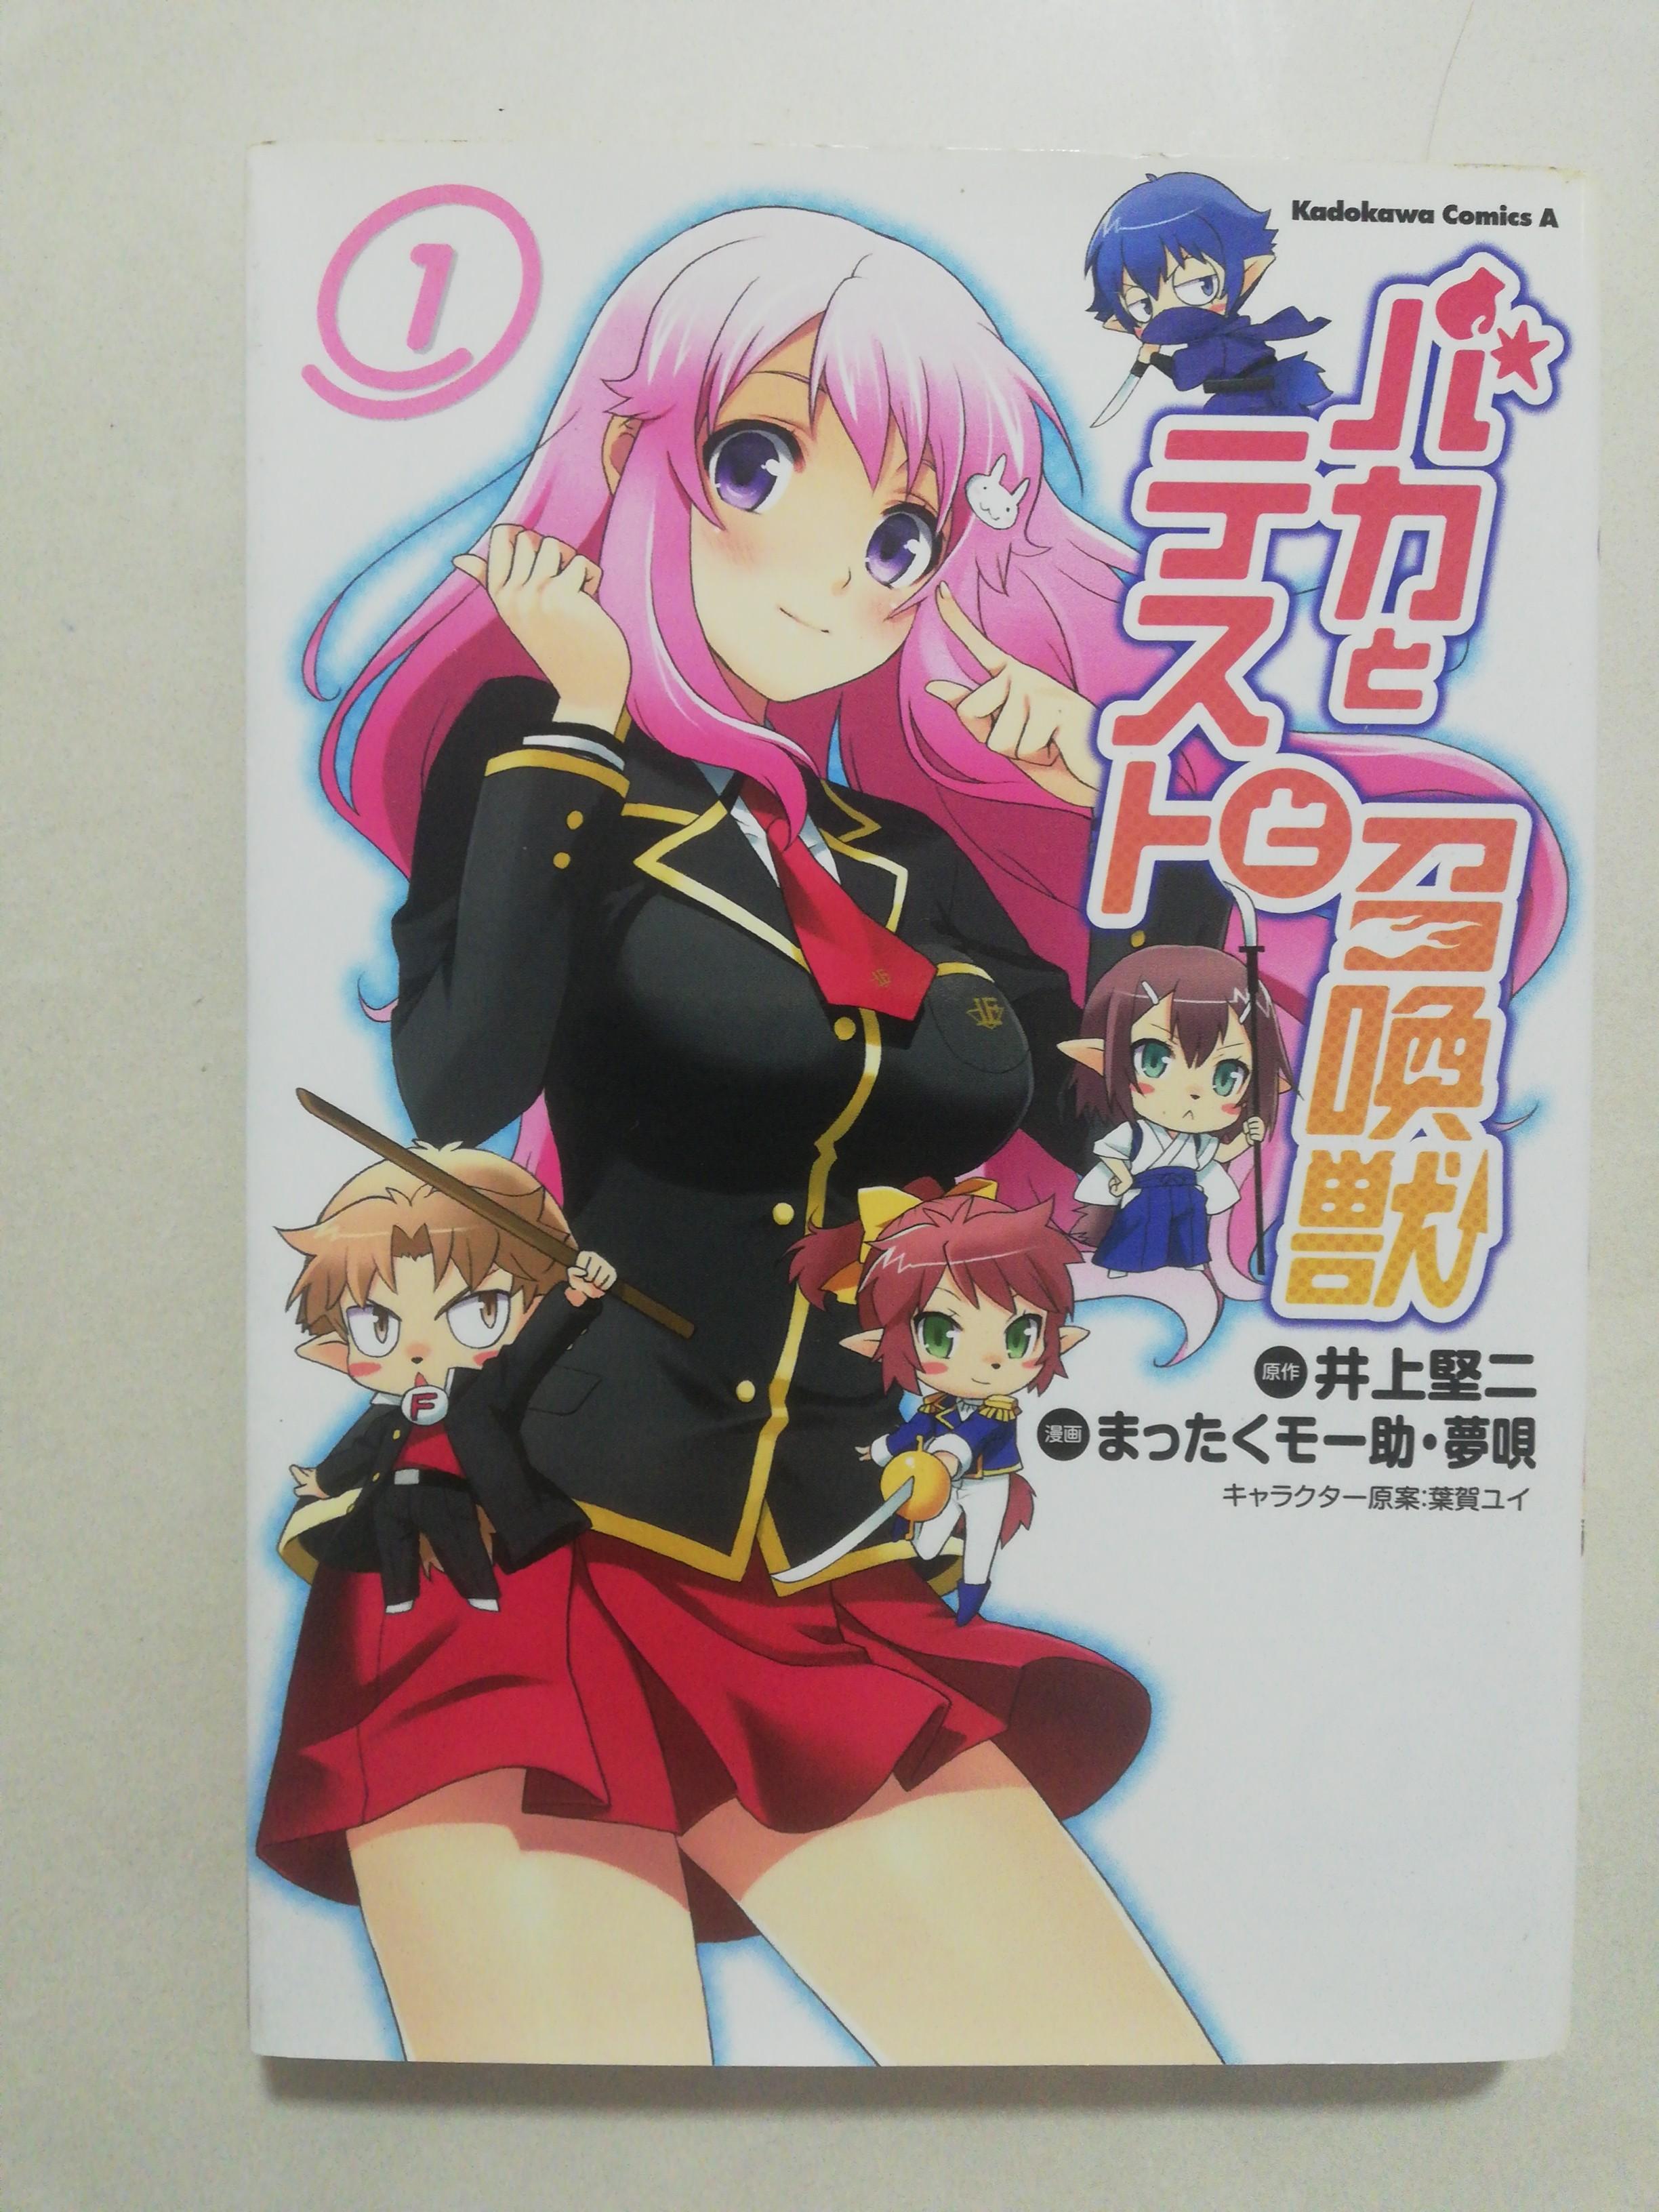 KATEKYO HITMAN REBORN Vol.1-10 Japanese Language Anime Manga Comic